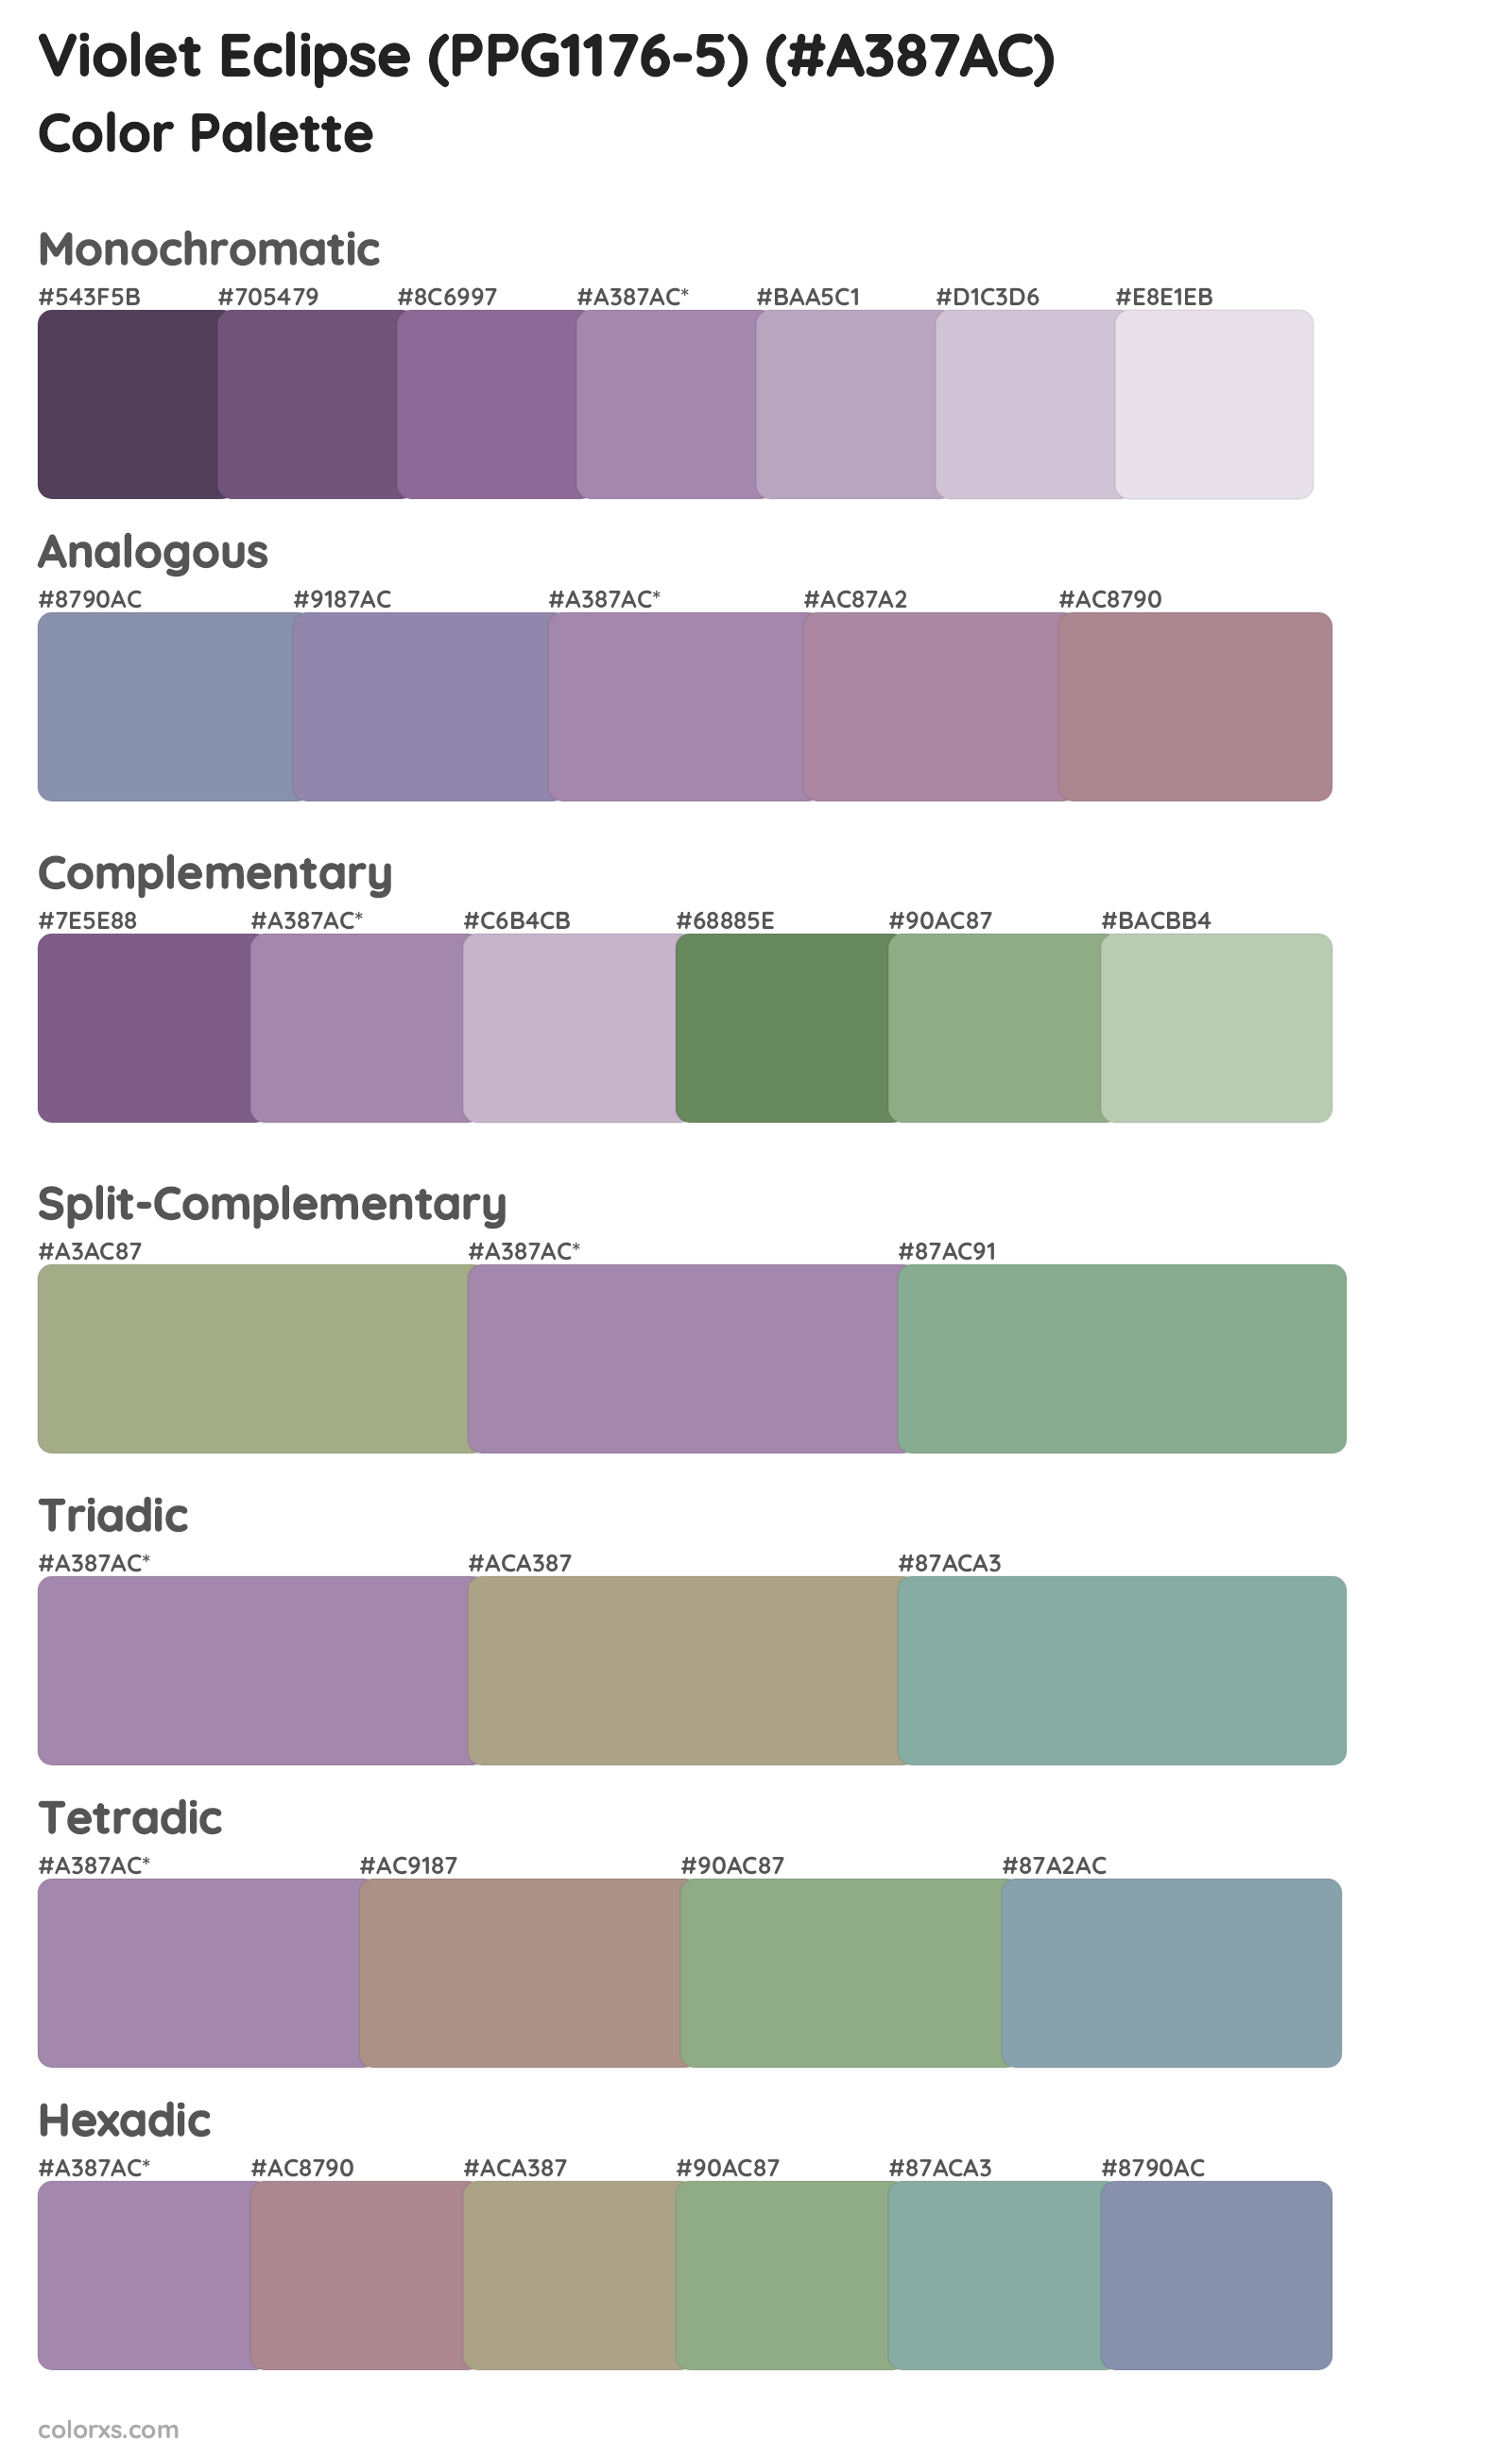 Violet Eclipse (PPG1176-5) Color Scheme Palettes